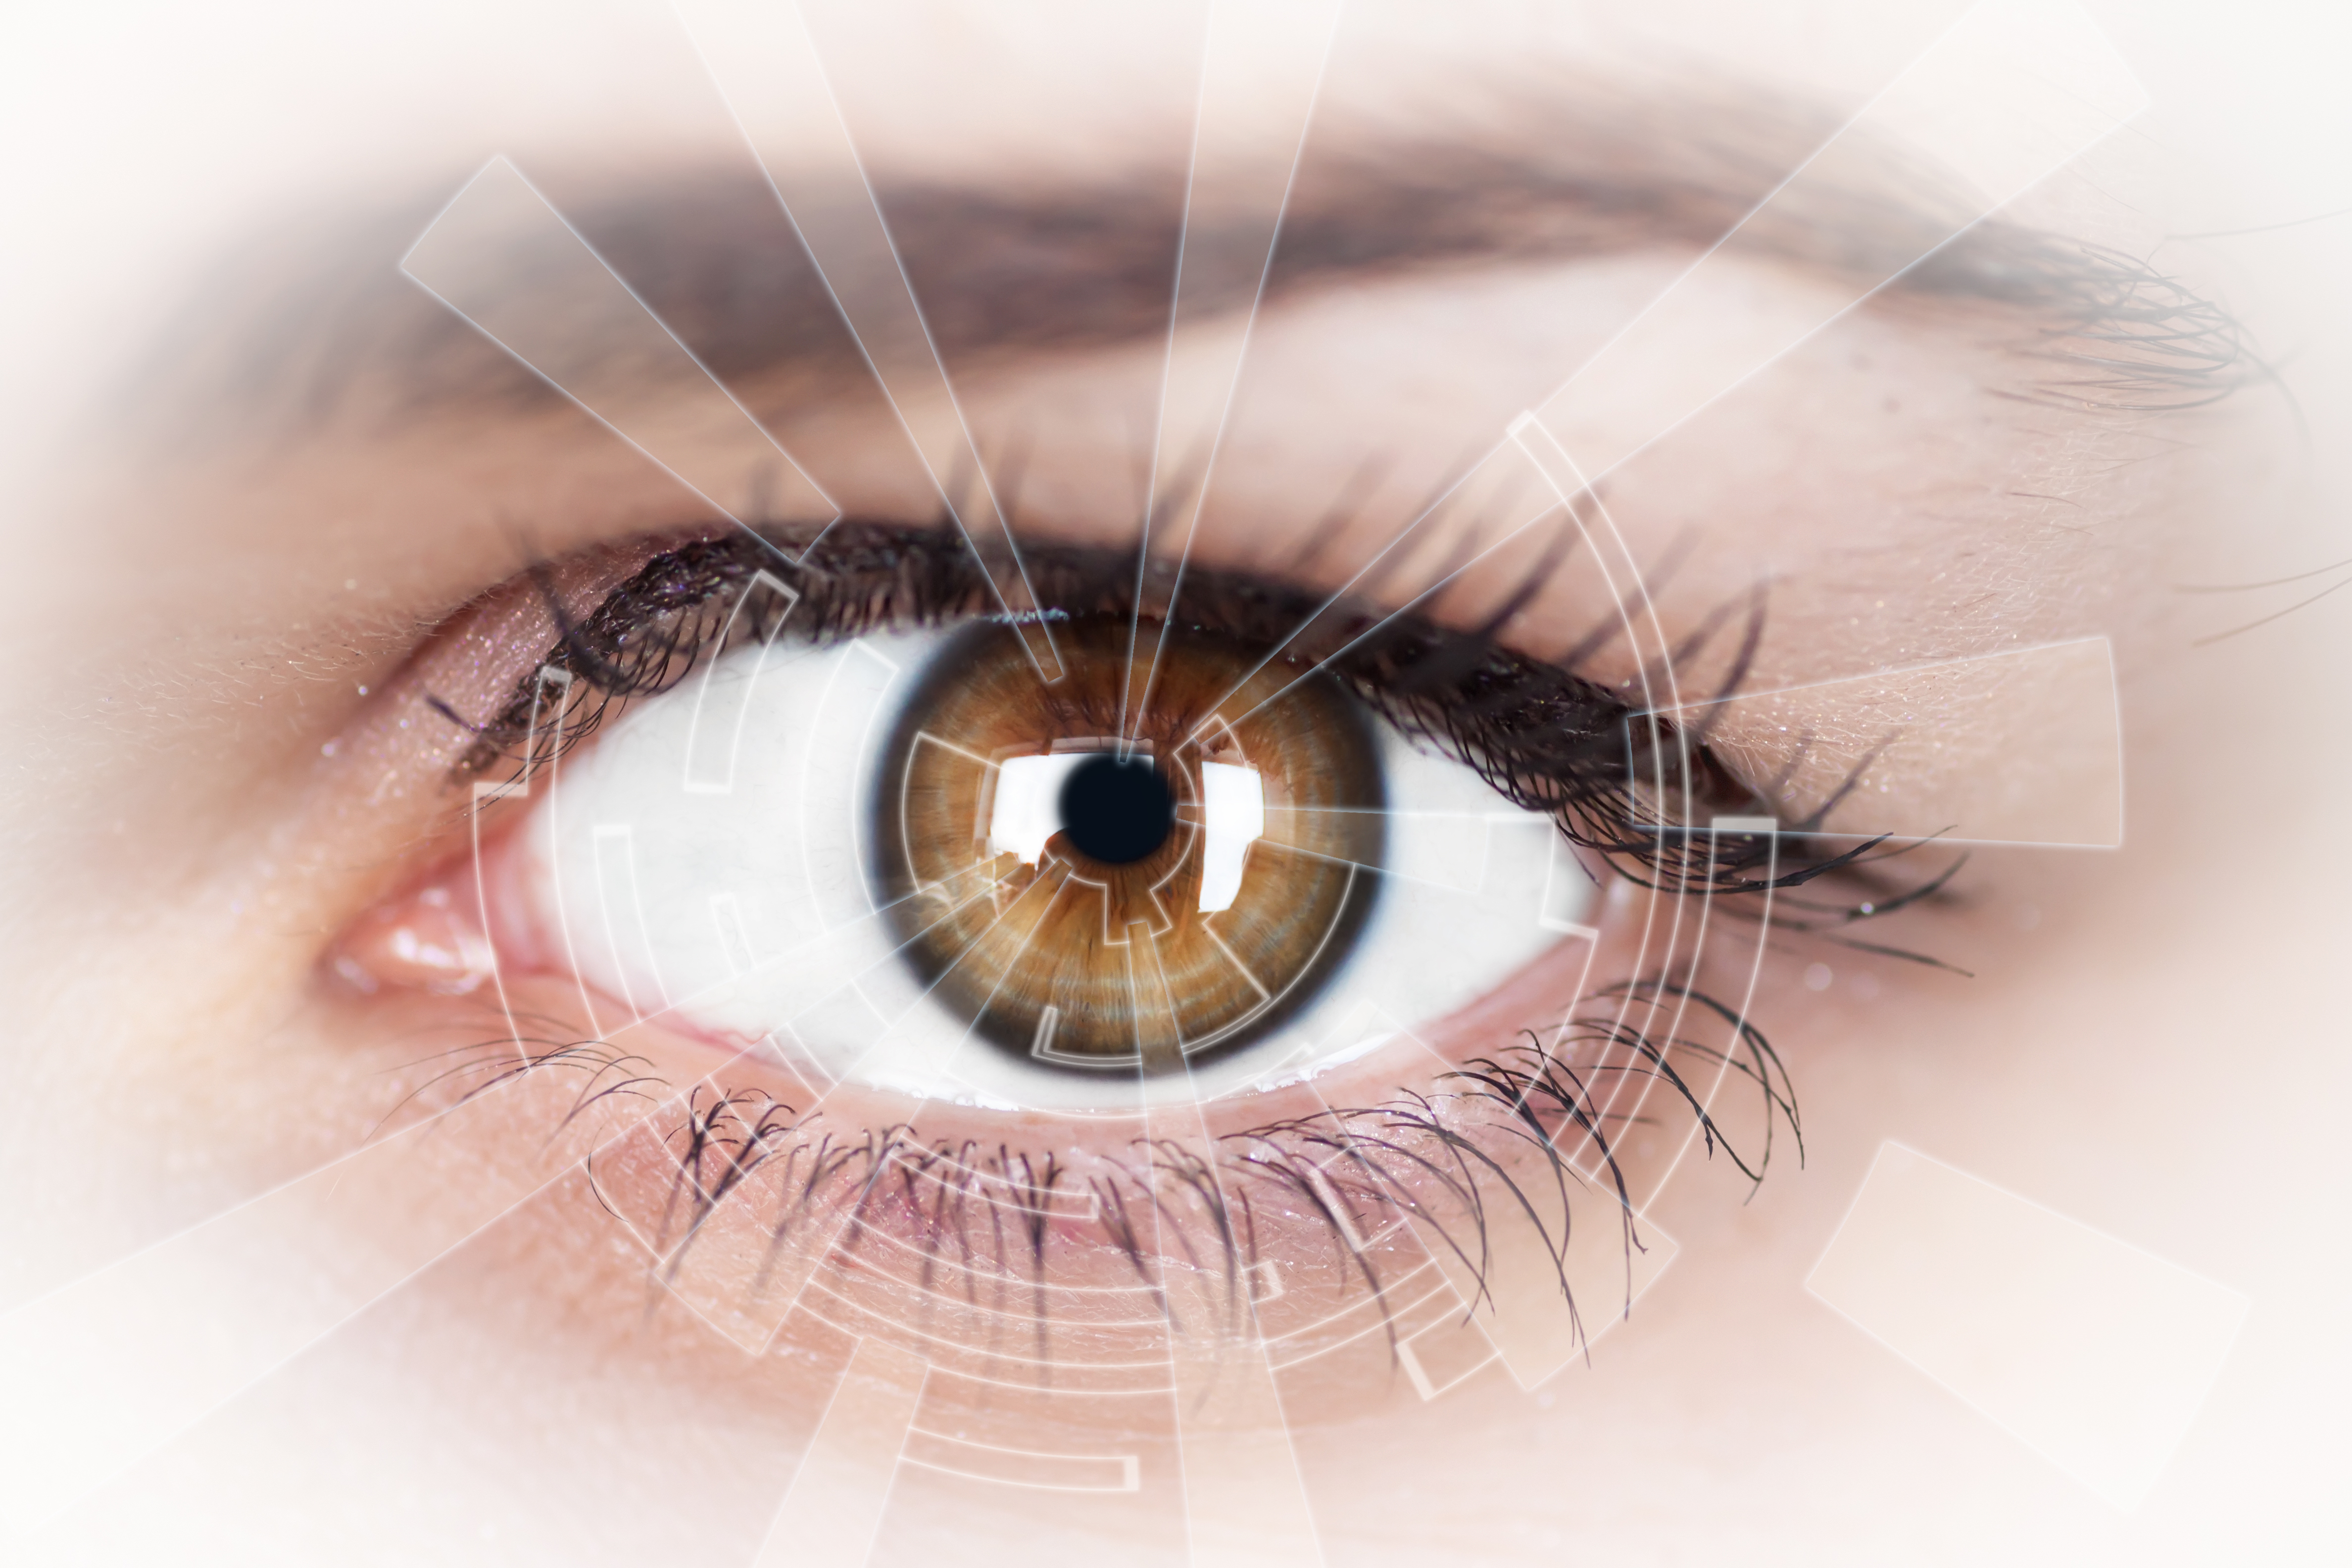 scanned eye by iris scanner